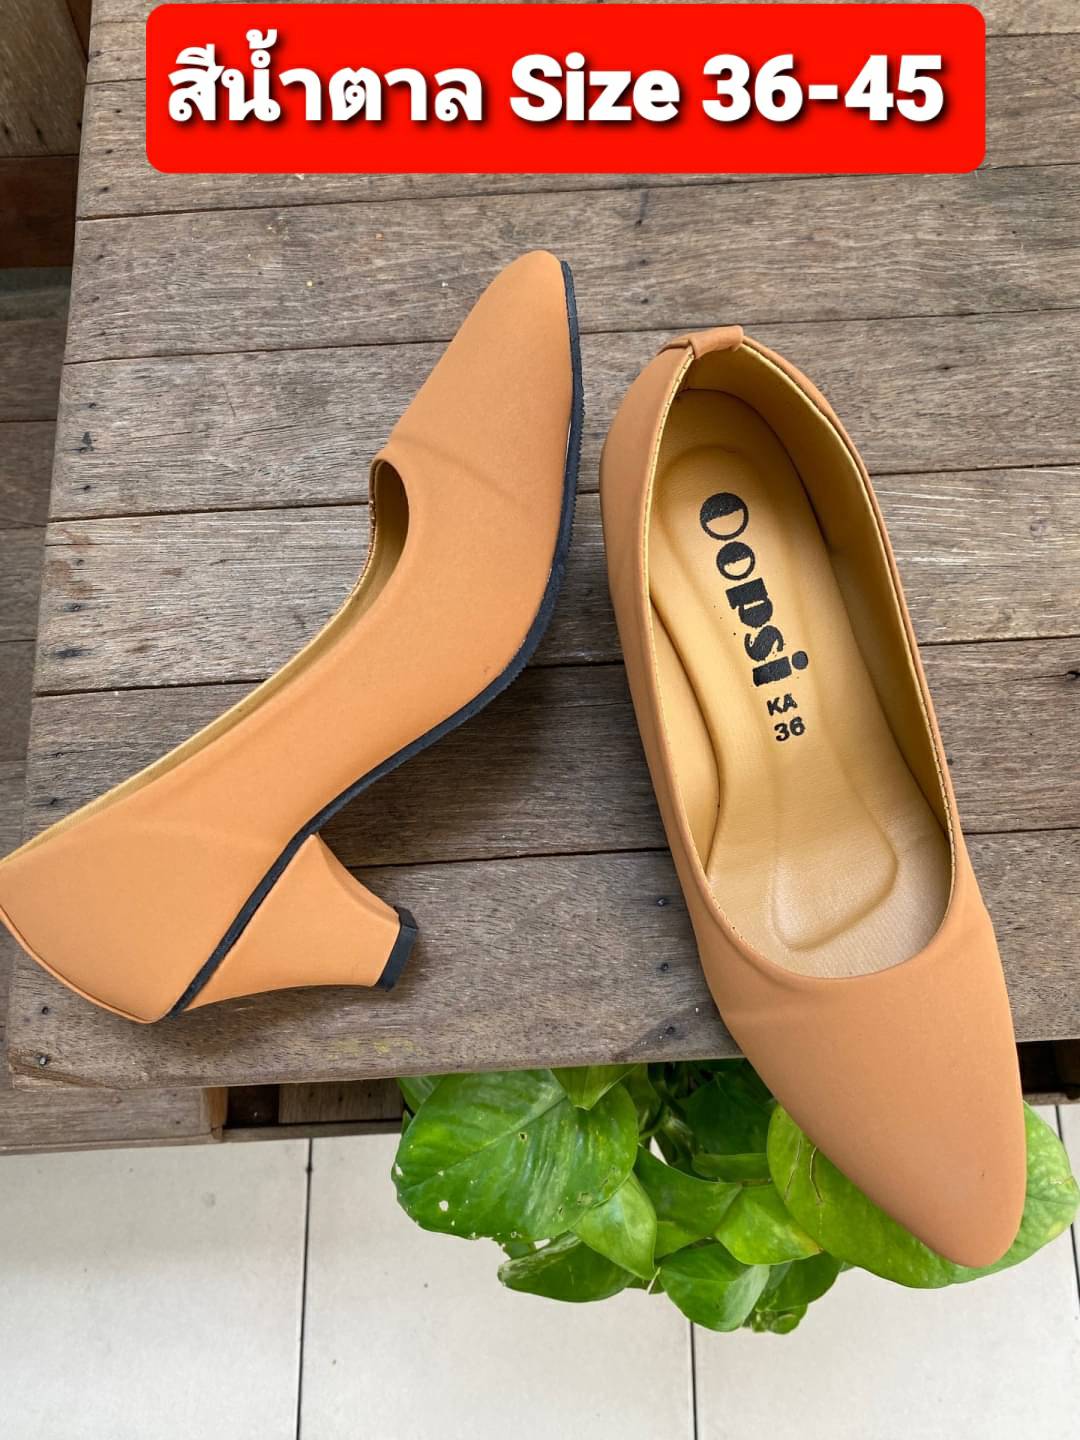 รองเท้าคัชชู หนังนิ่ม ไซด์ 36-45 ส้นแหลม สีสวยใส่นุ่มสบาย มีครบทุกสีคะ